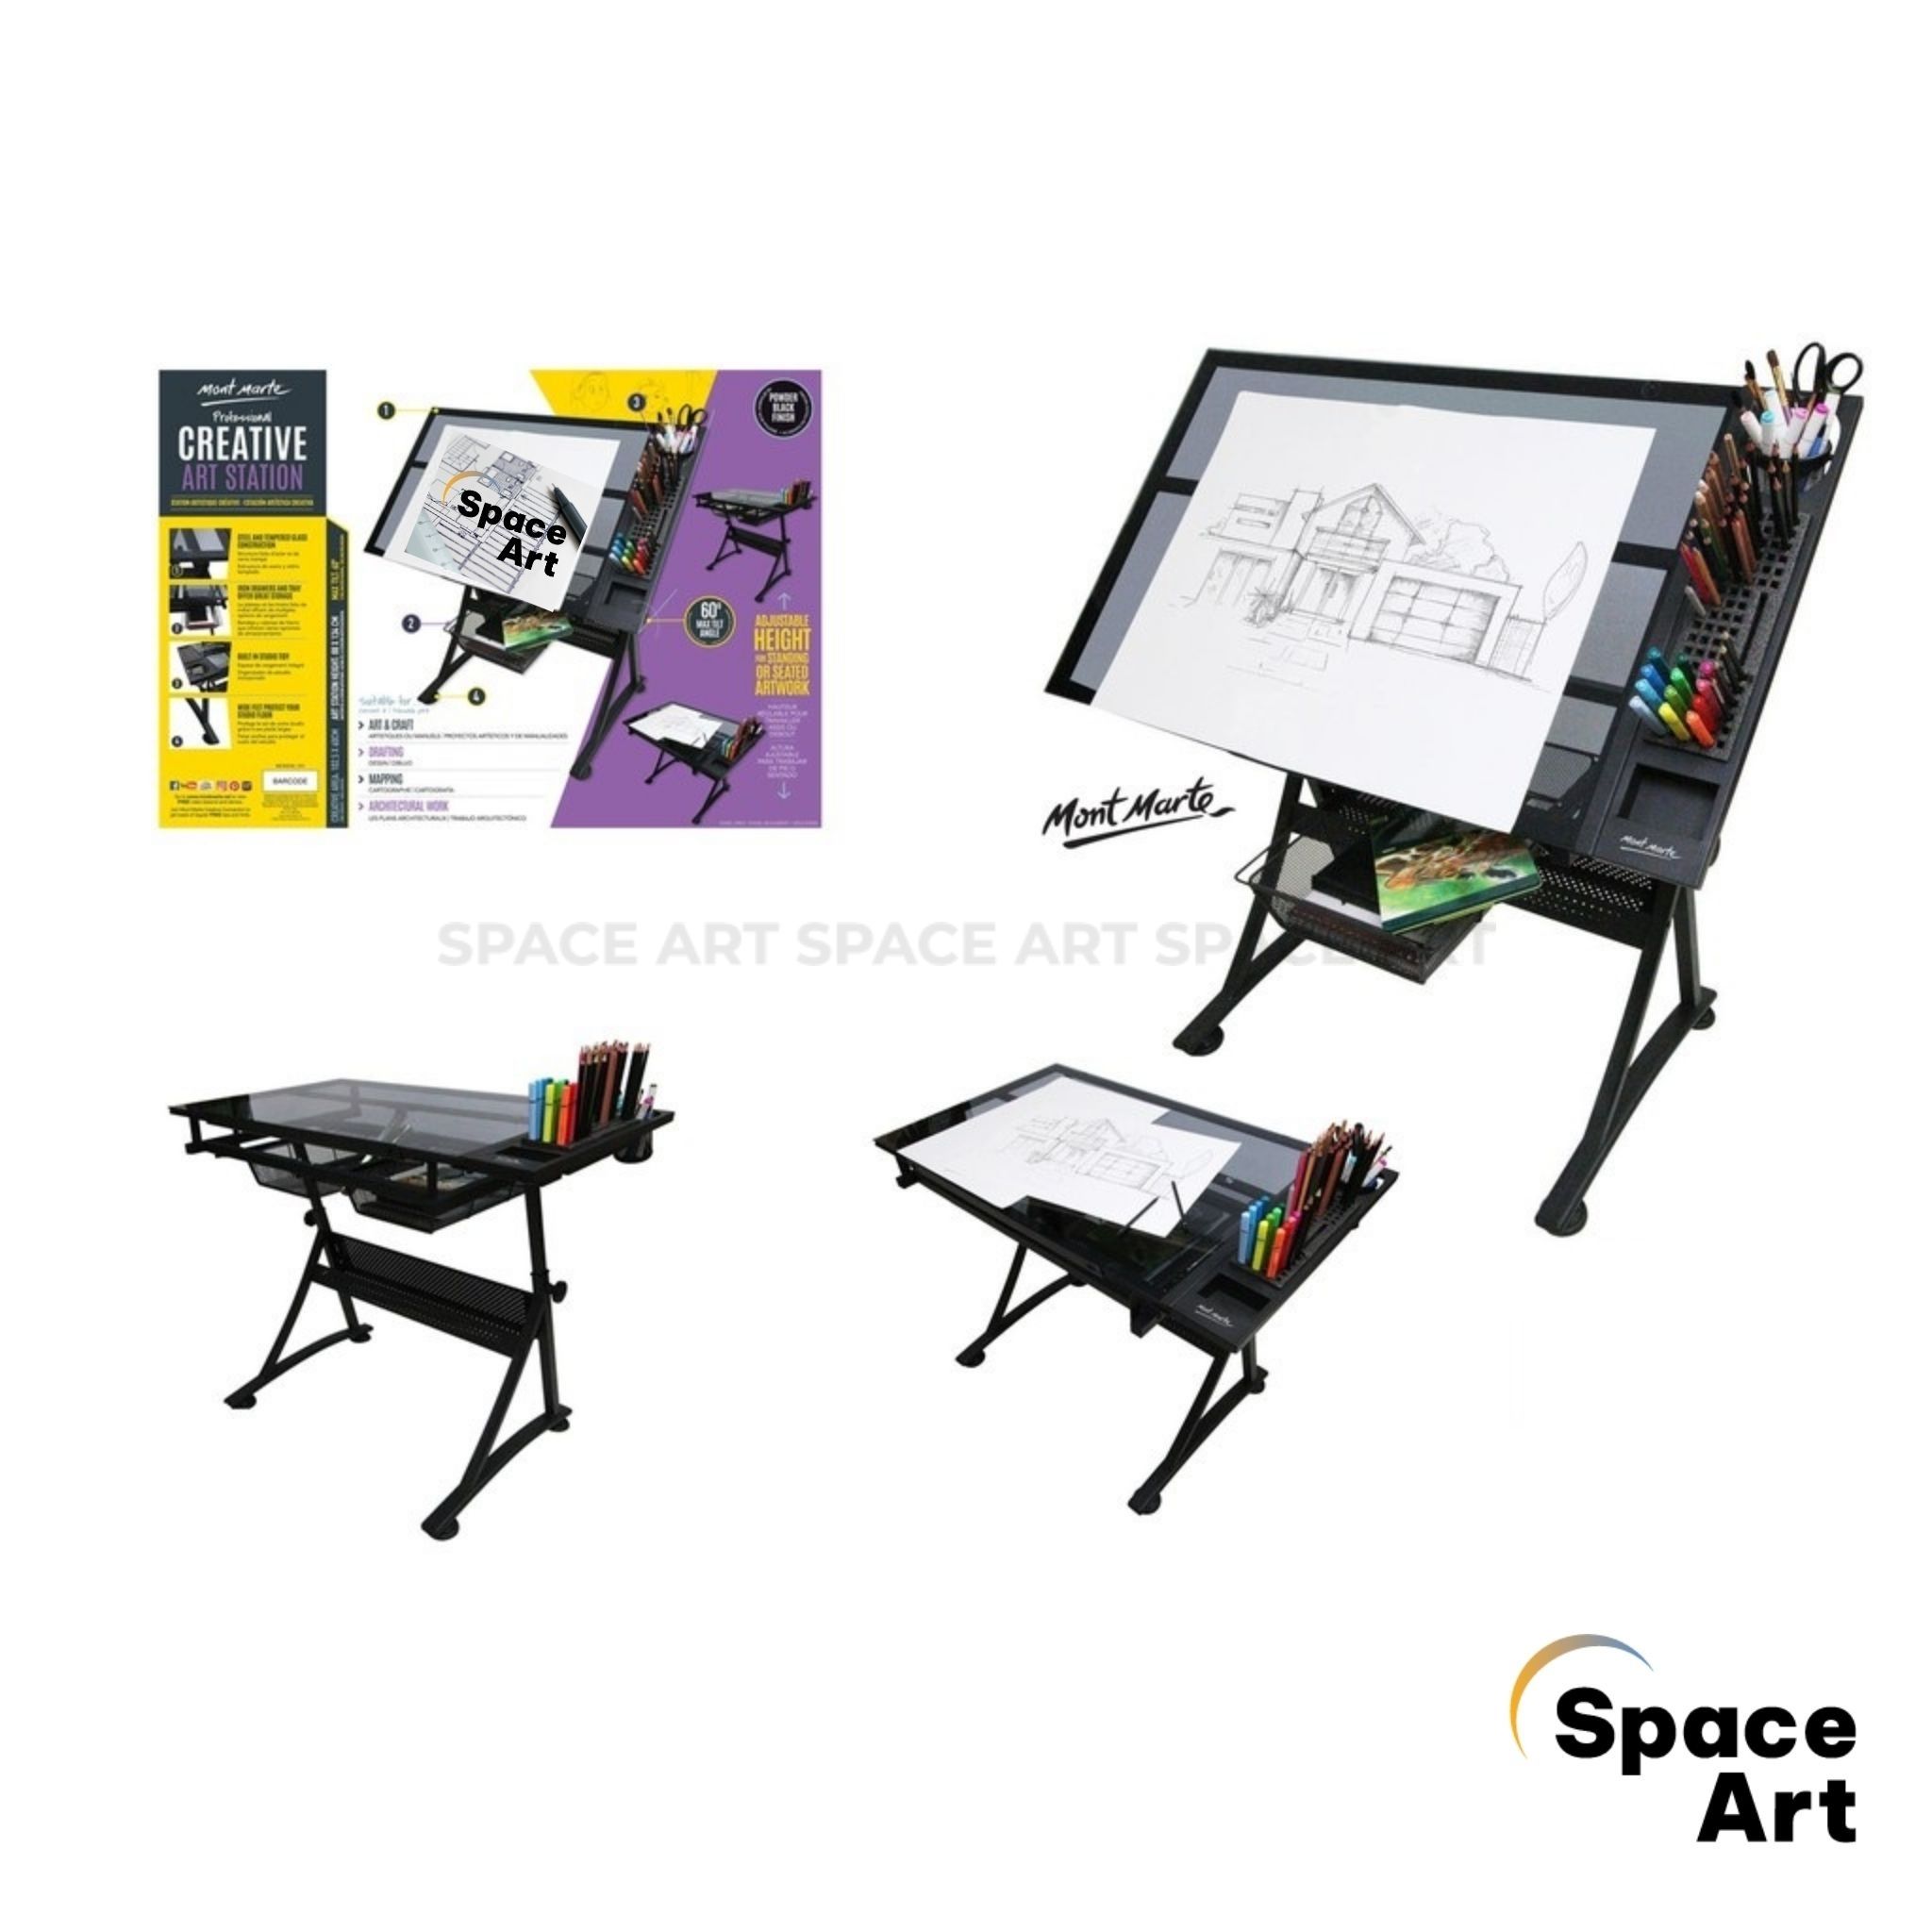 Space Art Store: Cửa hàng nghệ thuật Space Art Store mang đến cho bạn sự đa dạng và chất lượng sản phẩm của nghệ thuật. Chúng tôi tự hào cung cấp đầy đủ các sản phẩm về bản vẽ kỹ thuật, dụng cụ vẽ, giấy vẽ, mặt kính cường lực và rất nhiều sản phẩm khác. Hãy đến với chúng tôi để trải nghiệm sự phong phú và đẳng cấp của cửa hàng nghệ thuật Space Art.